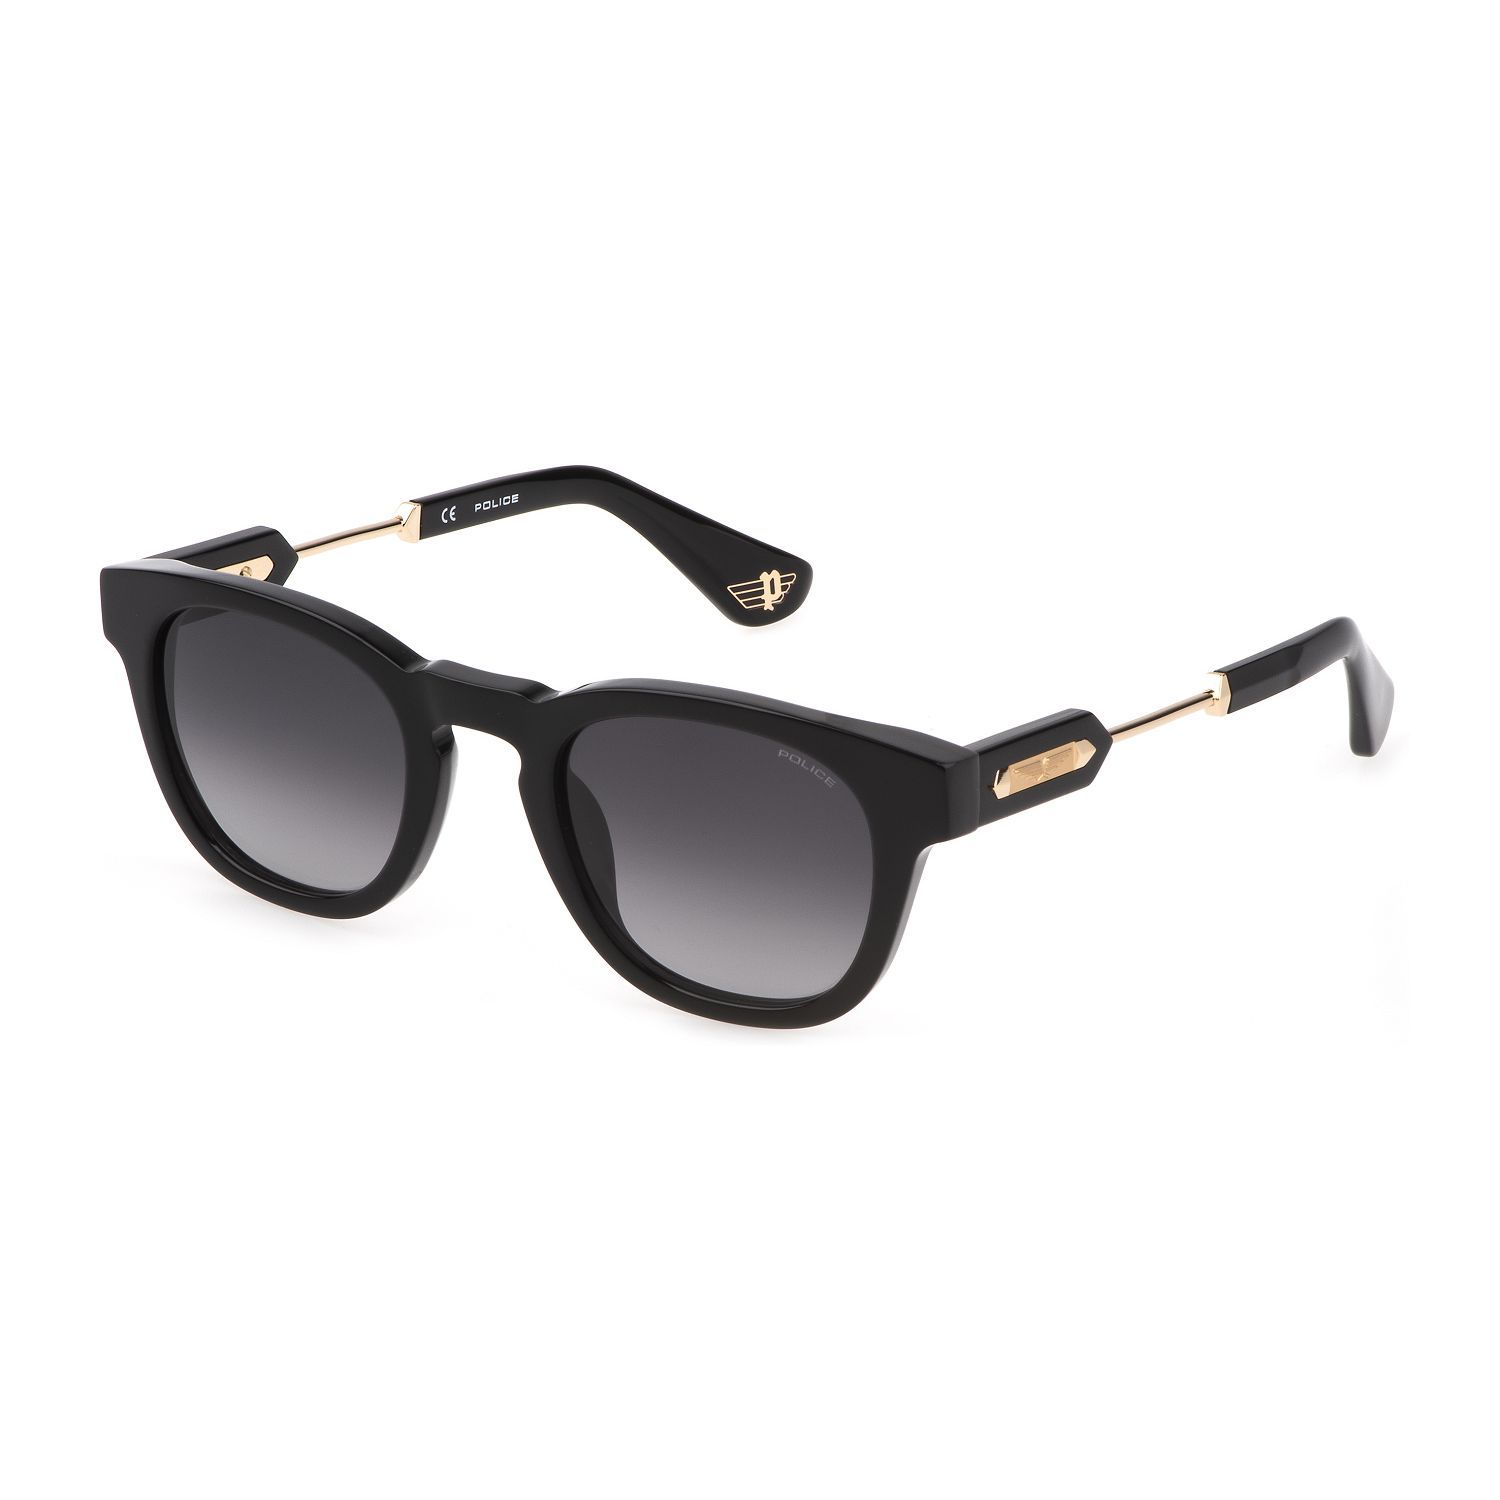 SPLF70M Panthos Sunglasses 700 - size 50